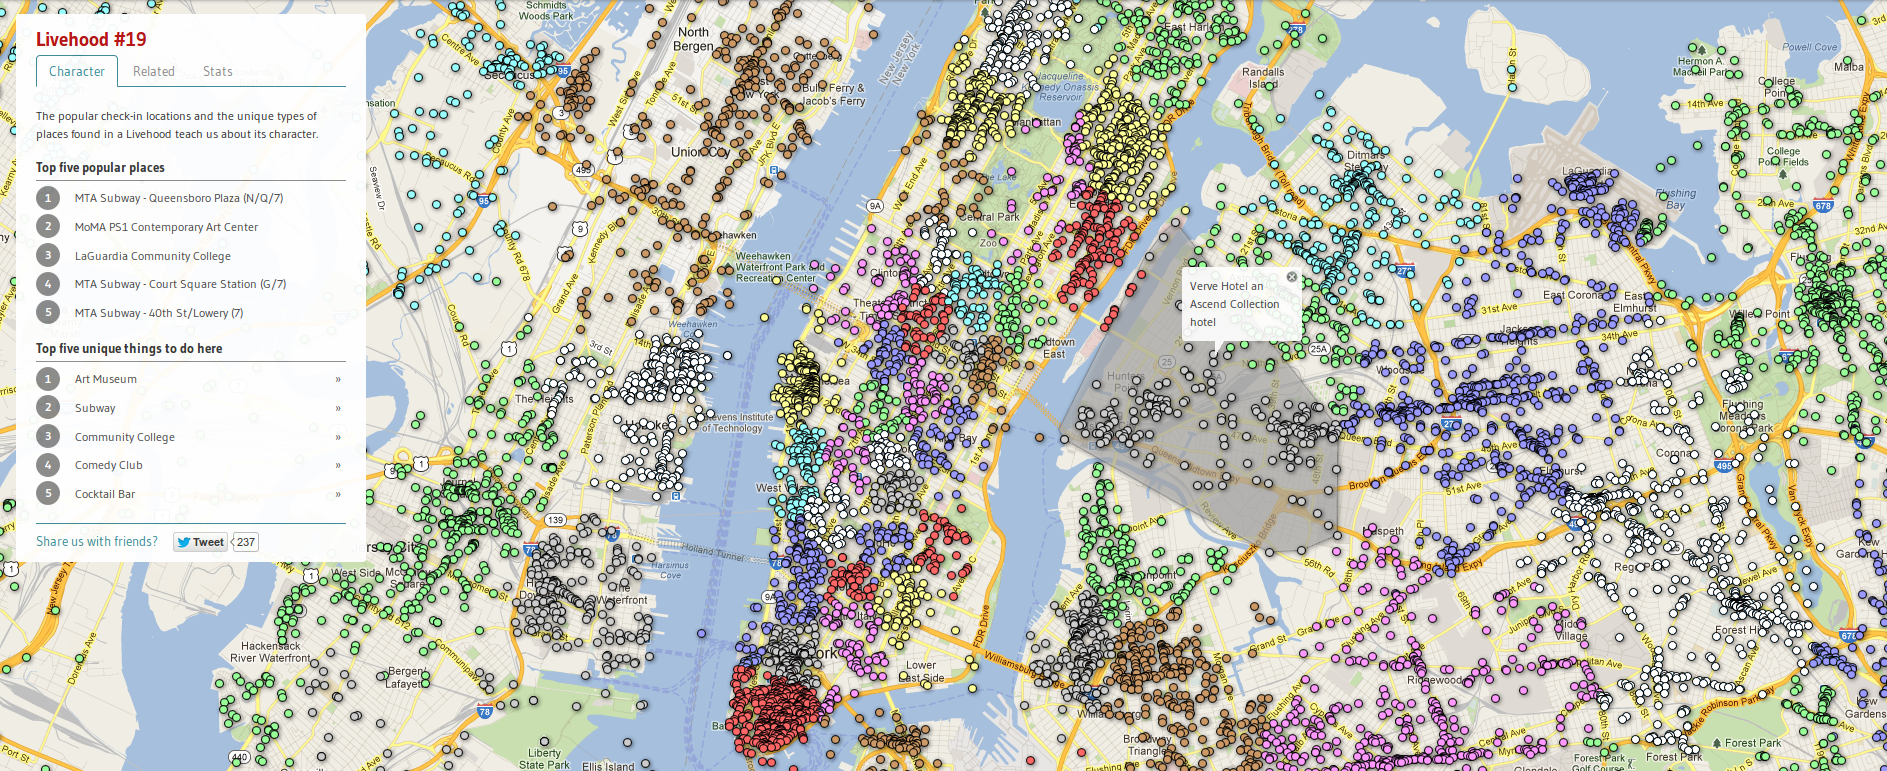 Los &ldquo;barrios vivos&rdquo; (livehoods) de Nueva York de acuerdo a datos de Foursquare. Al cliquear un barrio, se despliega la envolvente convexa que lo delimita.